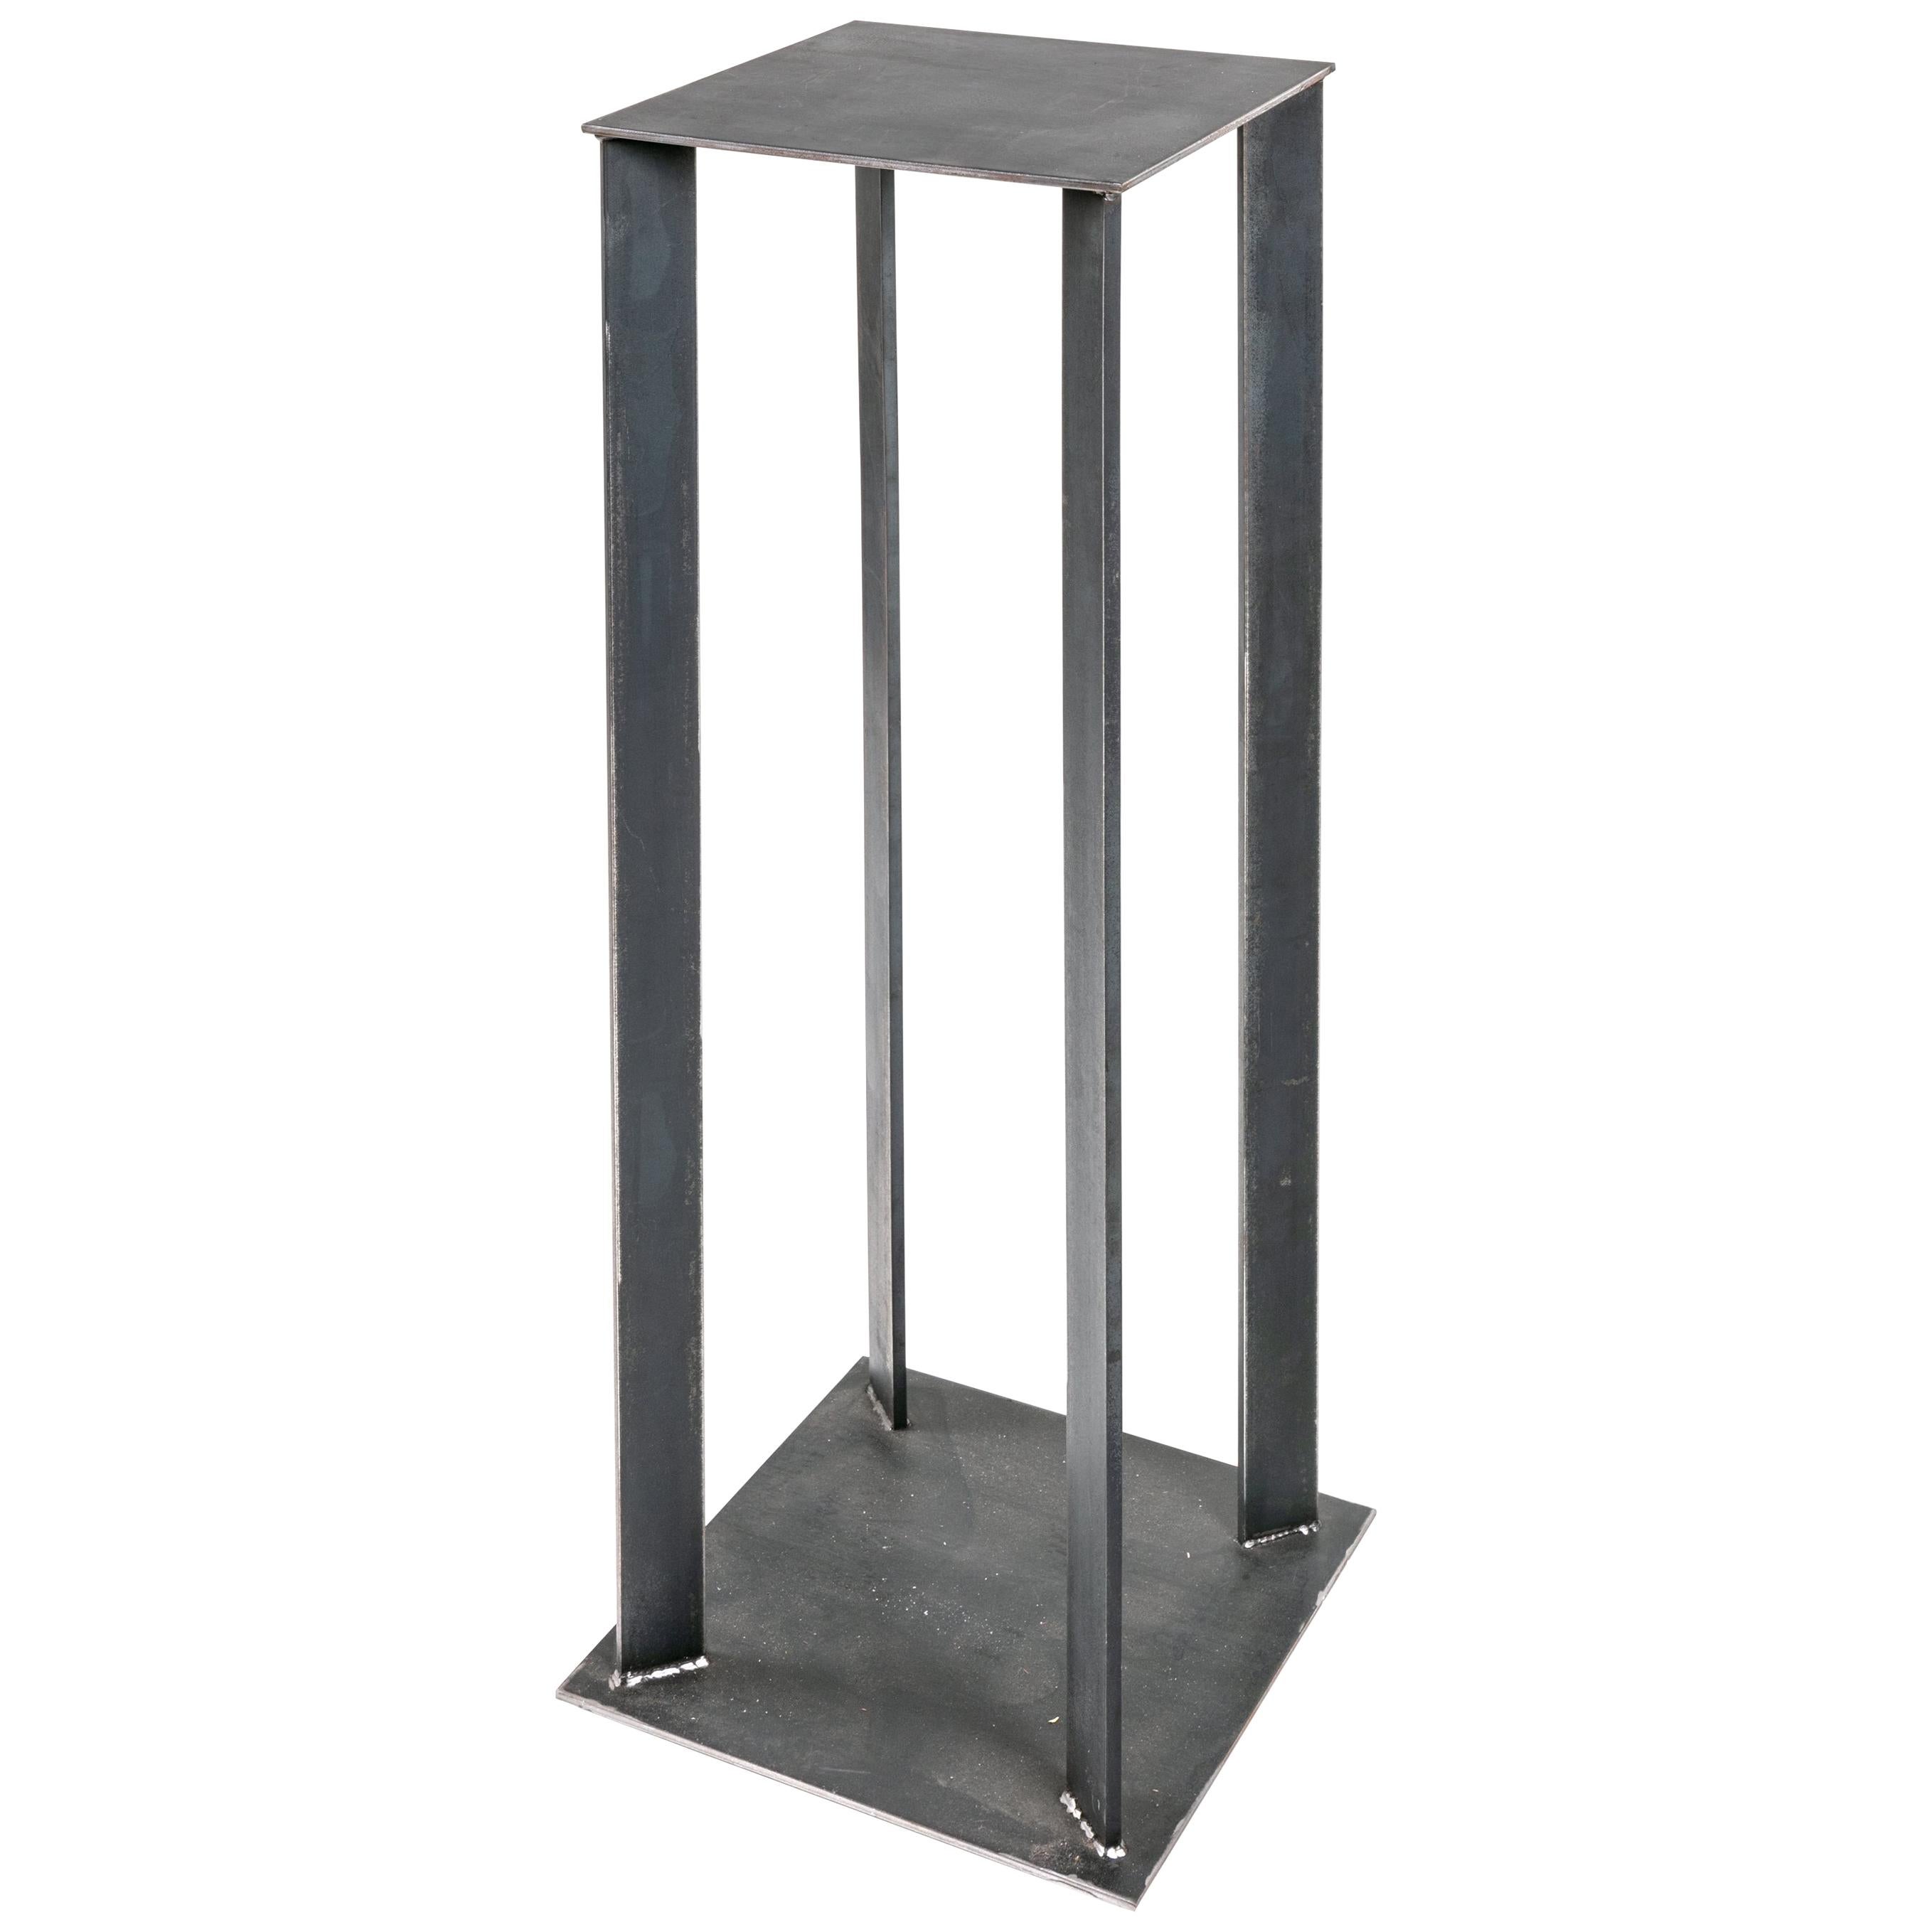 Artist Made Industrial Steel Pedestal Stand by Robert Koch, USA 2018